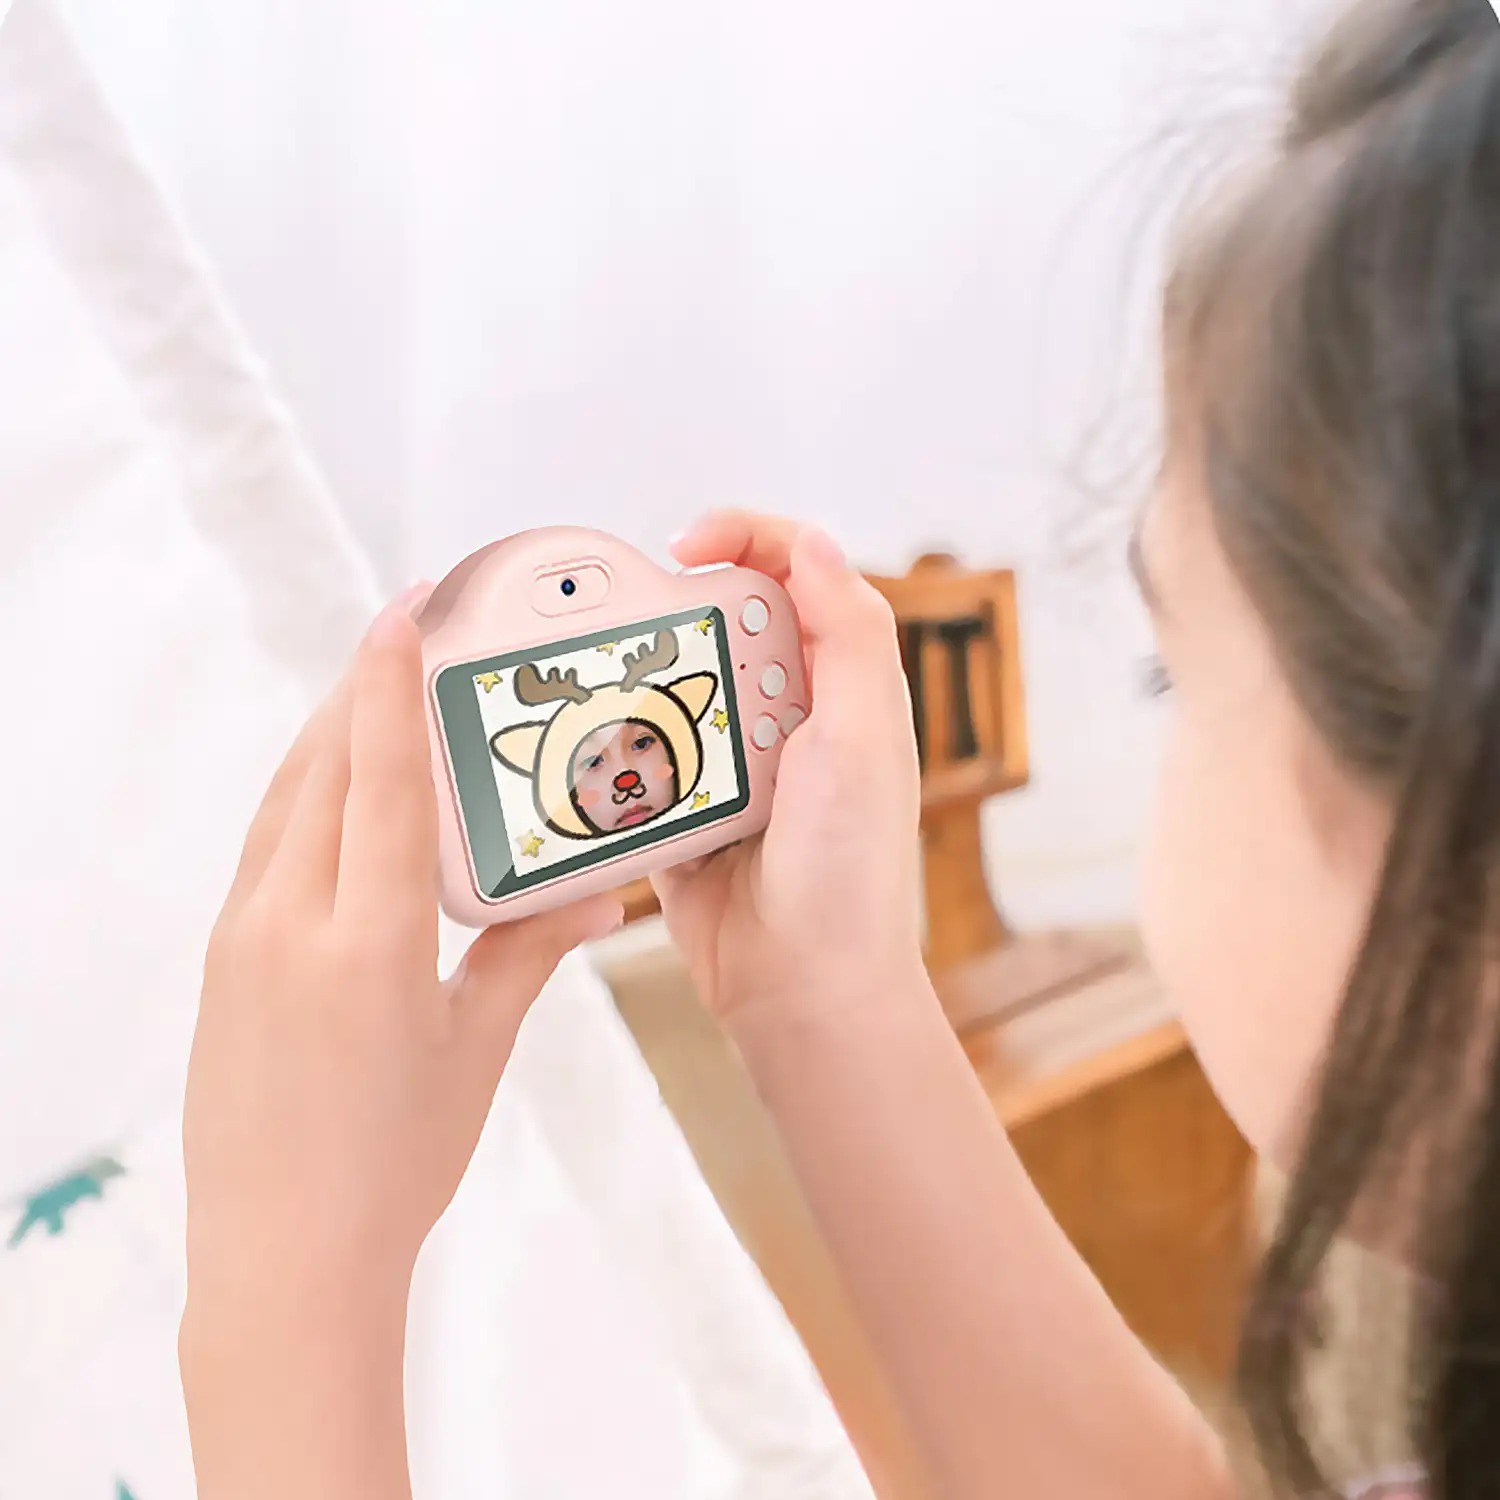 Cámara infantil A1 de fotos y video. Diseño Oso Panda. 20mpx y video HD. Cámara trasera para selfies.